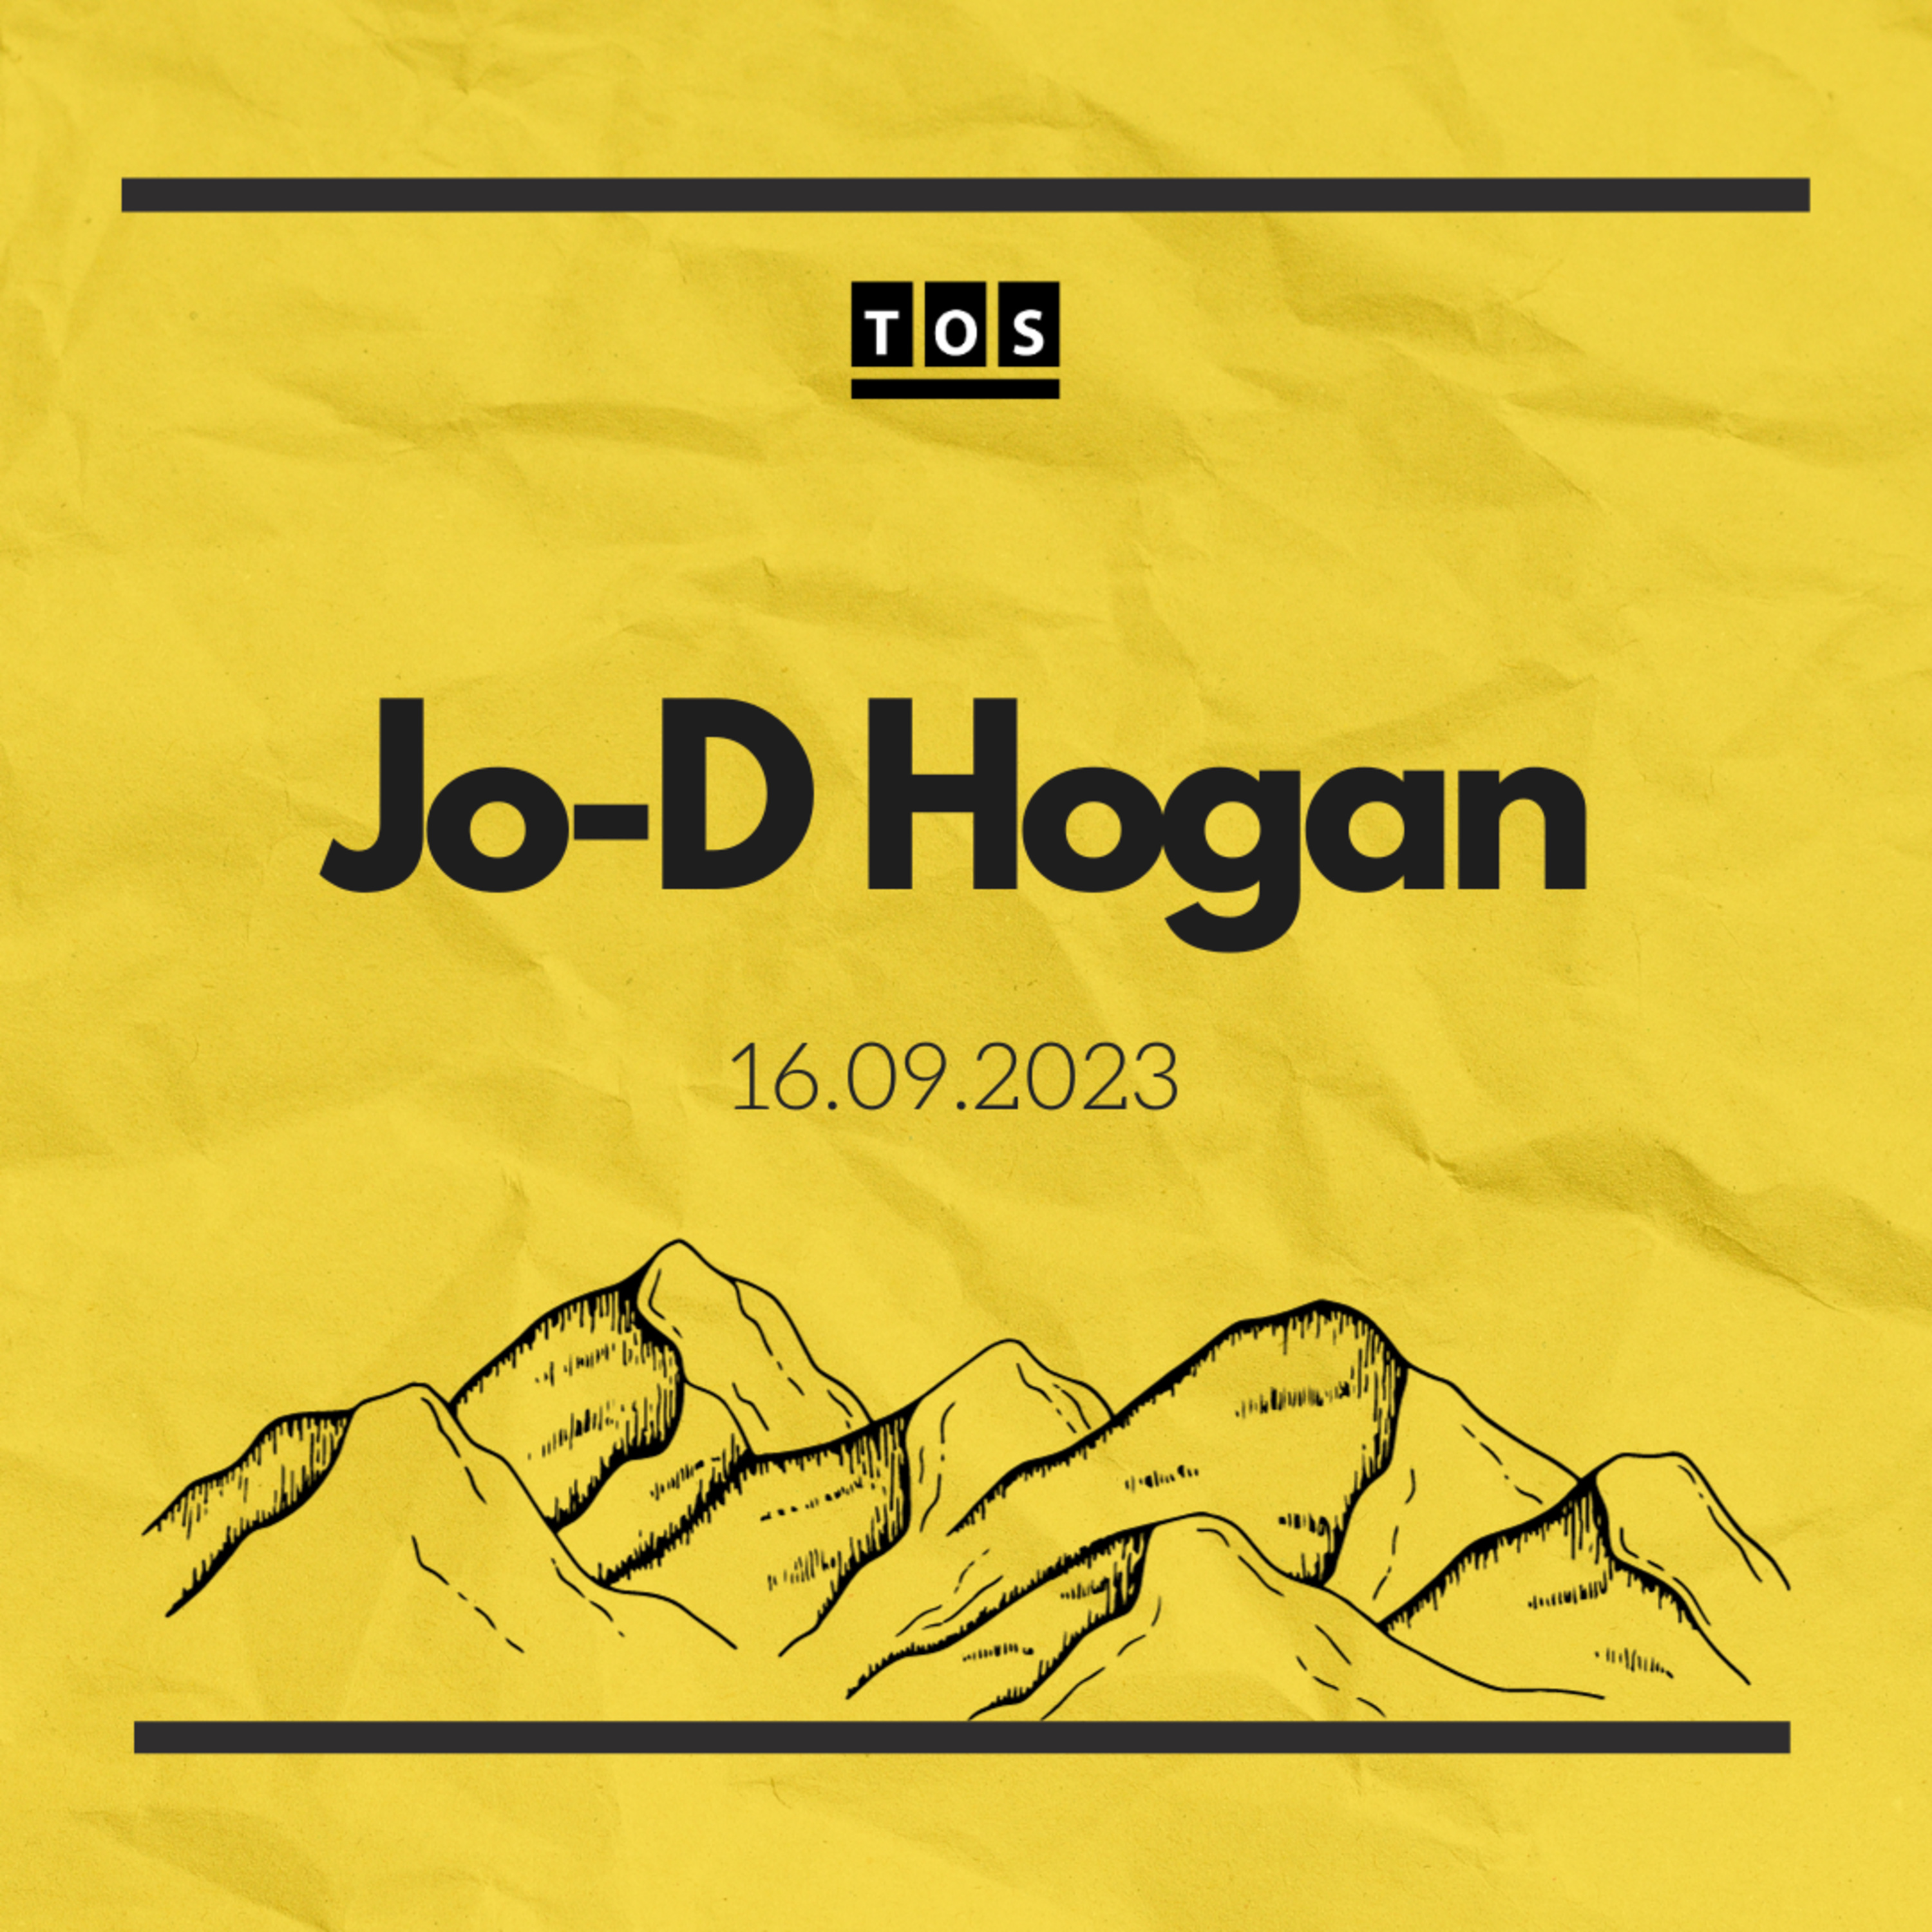 Jo-D Hogan - 16.09.2023